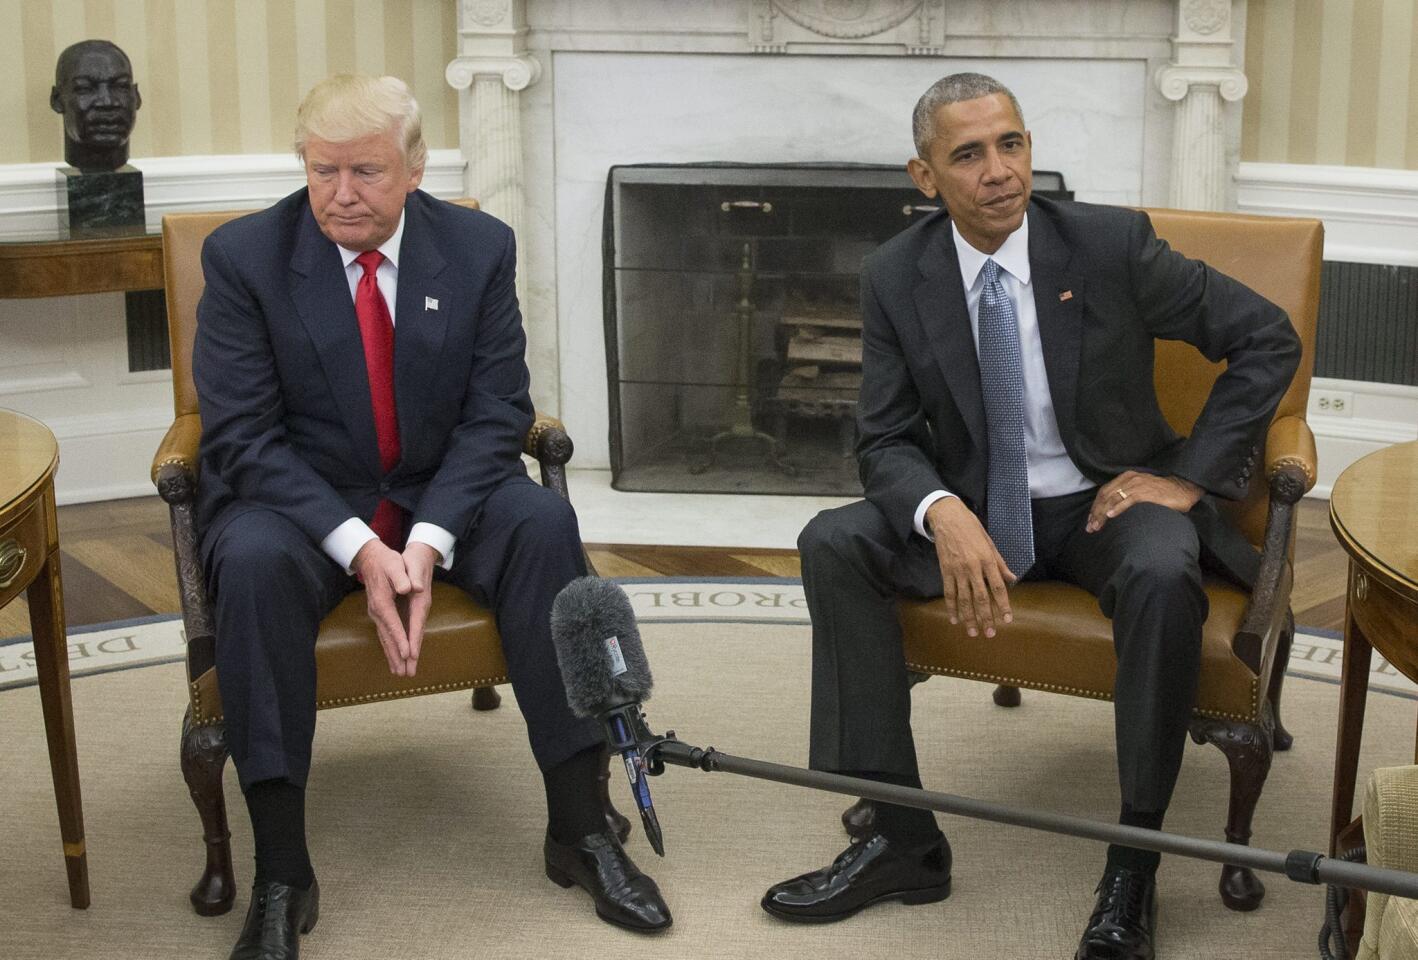 El presidente de los Estados Unidos, Barack Obama (d) junto con el presidente electo Donald Trump (i), en su encuentro en el despacho oval en la Casa Blanca, en Washington.